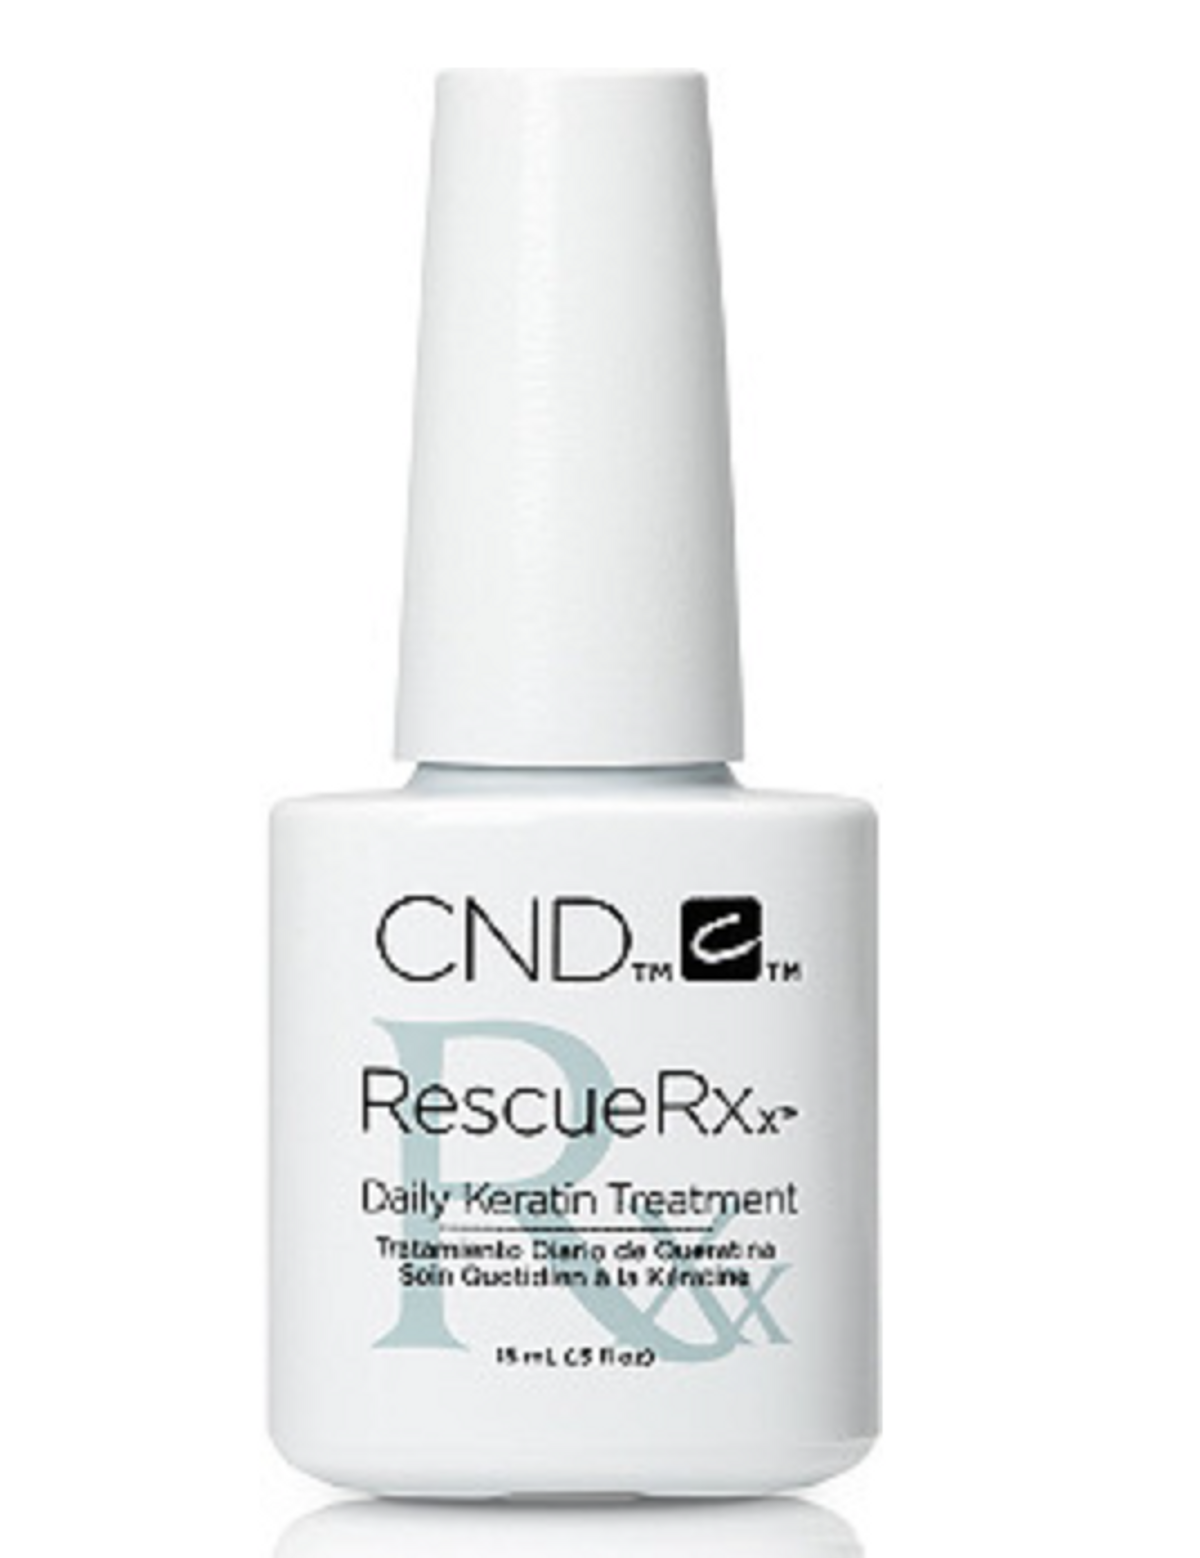 cnd rescuerxx 